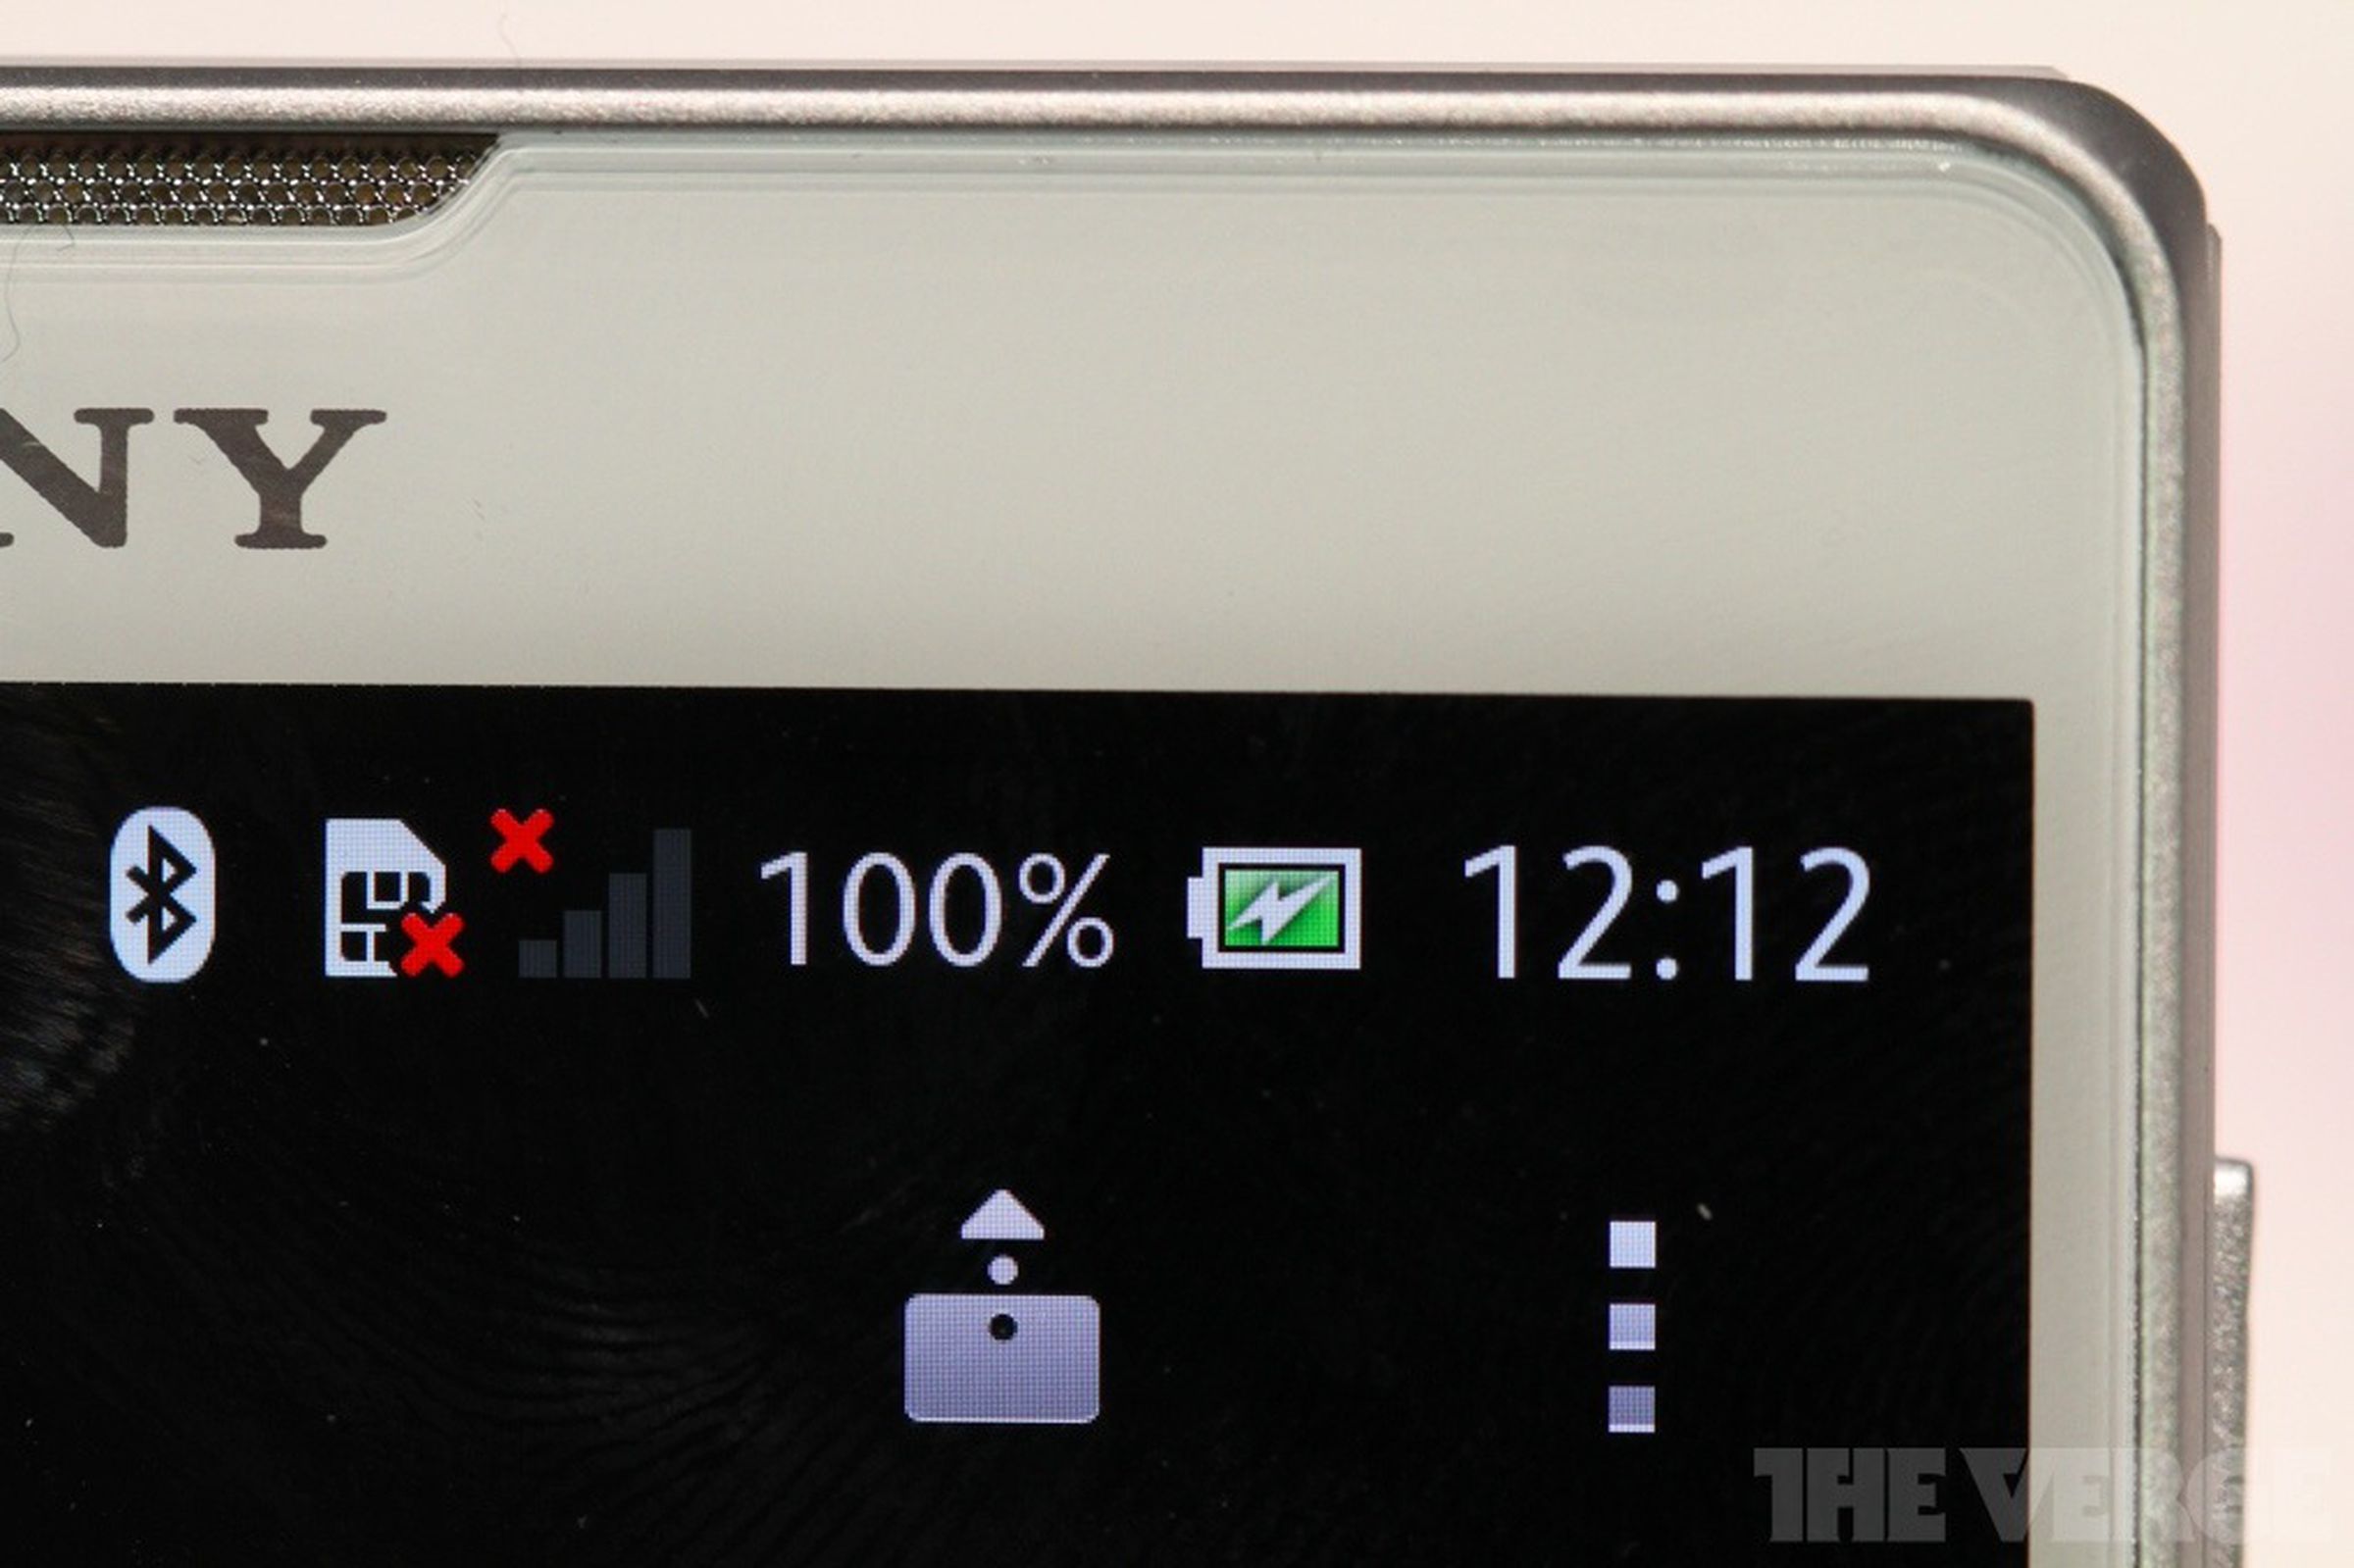 Sony Xperia Z / ZL hands-on photos